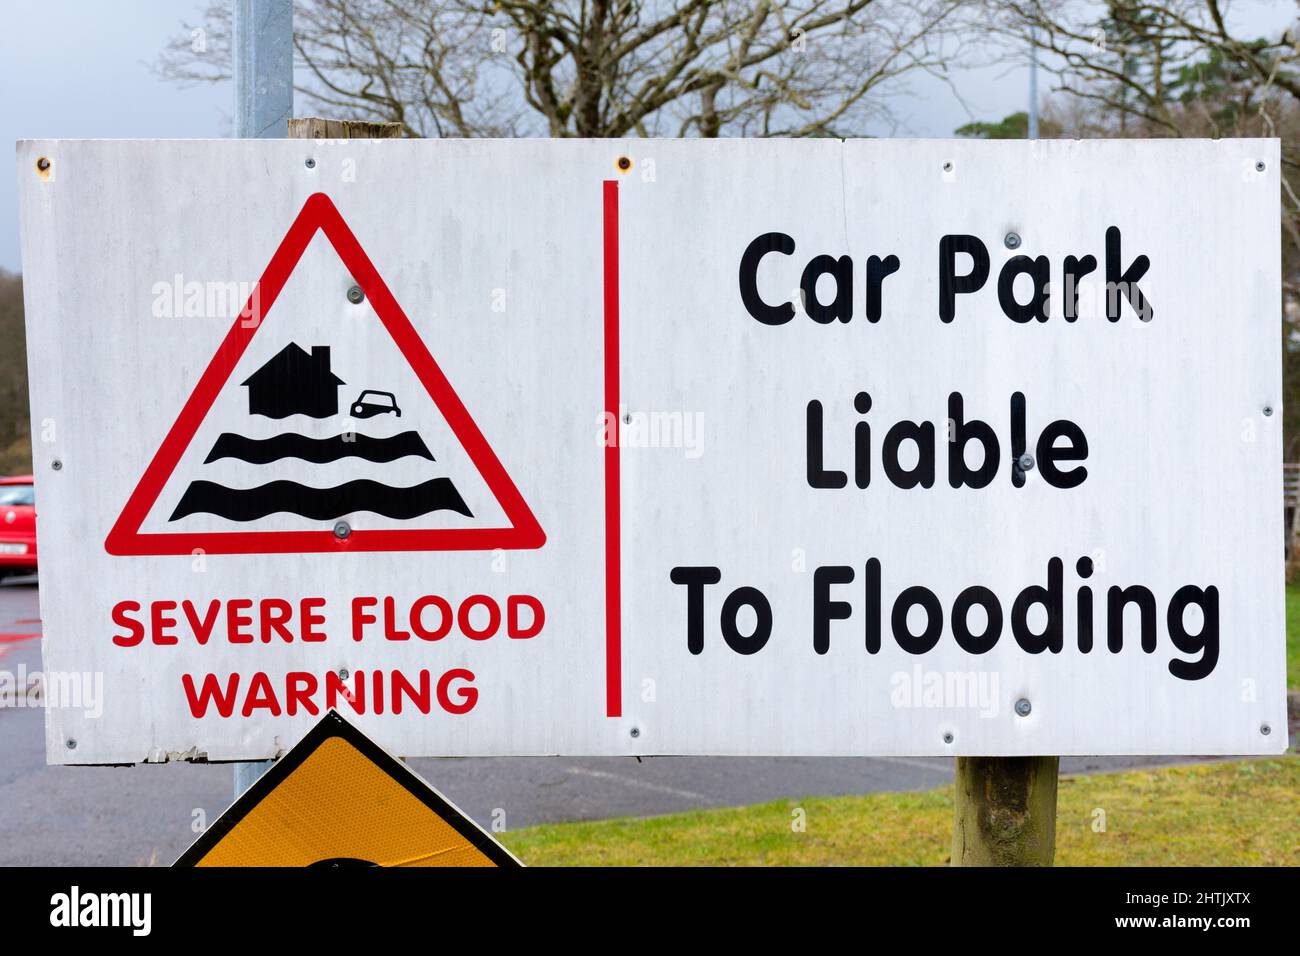 Cartello segnaletico, parcheggio soggetto a inondazioni, Donegal Town, County Donegal, Irlanda. Foto Stock